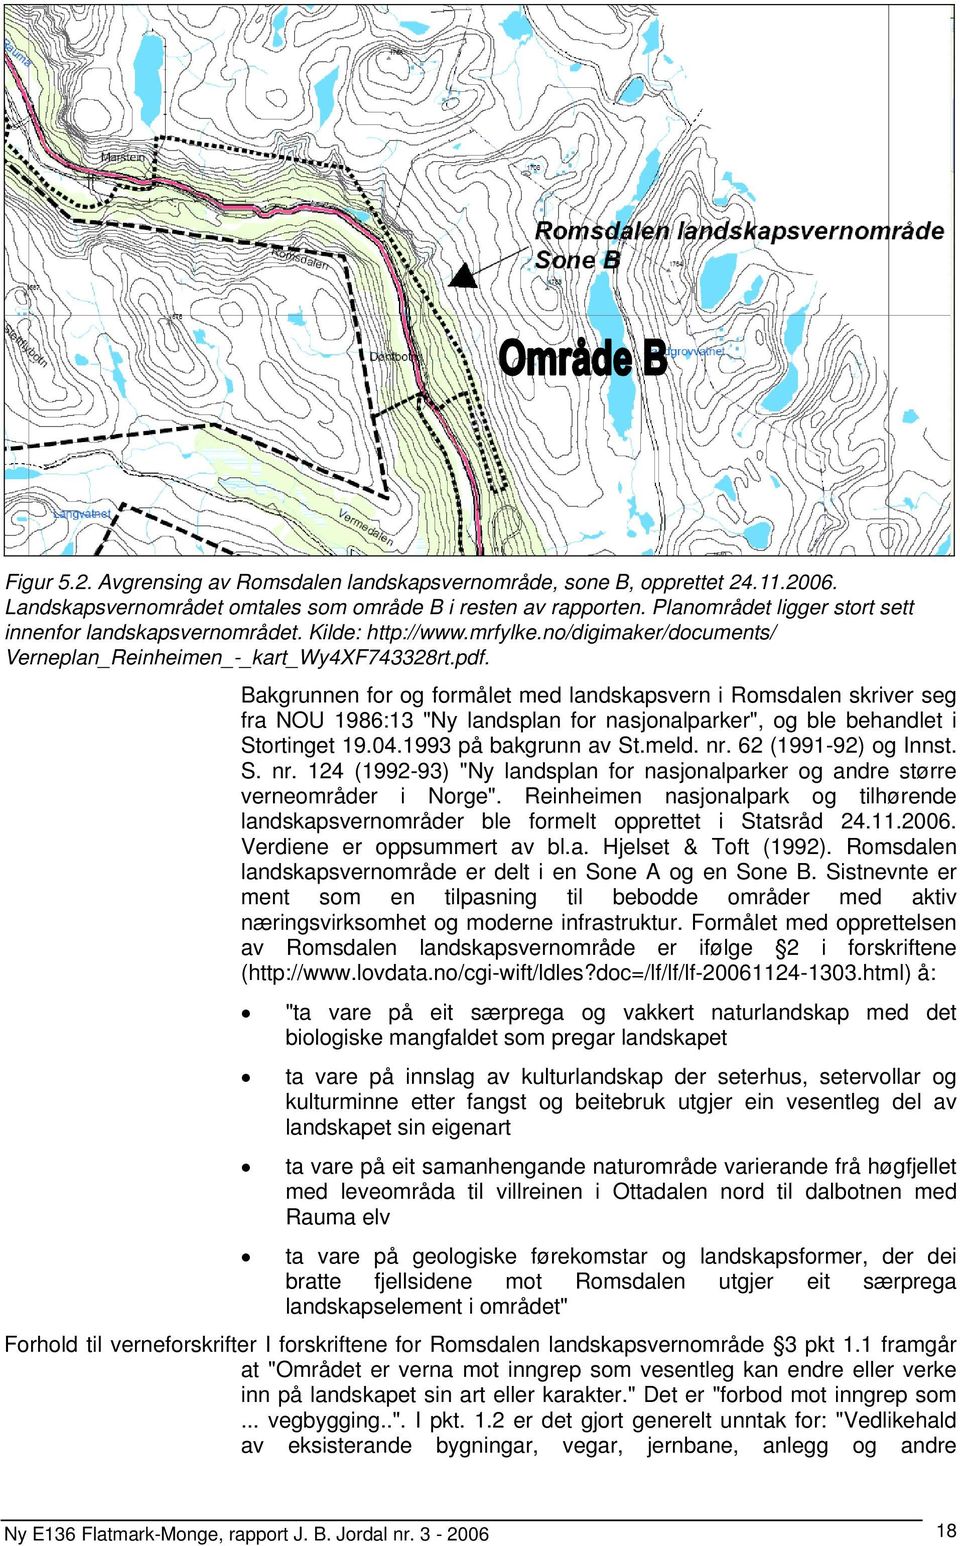 Bakgrunnen for og formålet med landskapsvern i Romsdalen skriver seg fra NOU 1986:13 "Ny landsplan for nasjonalparker", og ble behandlet i inget 19.04.1993 på bakgrunn av St.meld. nr.